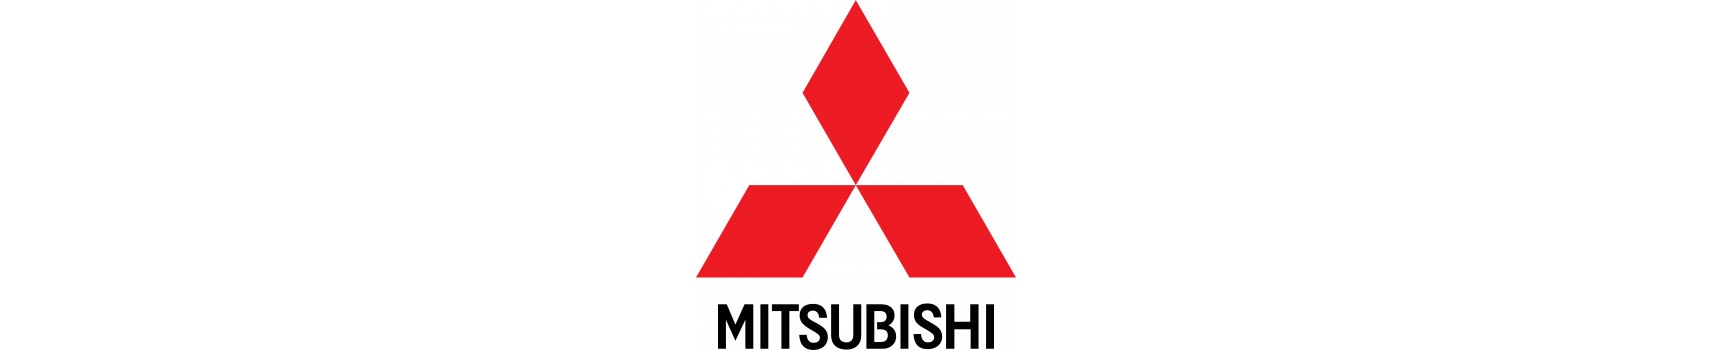 Mitsubishi wyposażenie terenowe, akcesoria 4x4 Mitsubishi